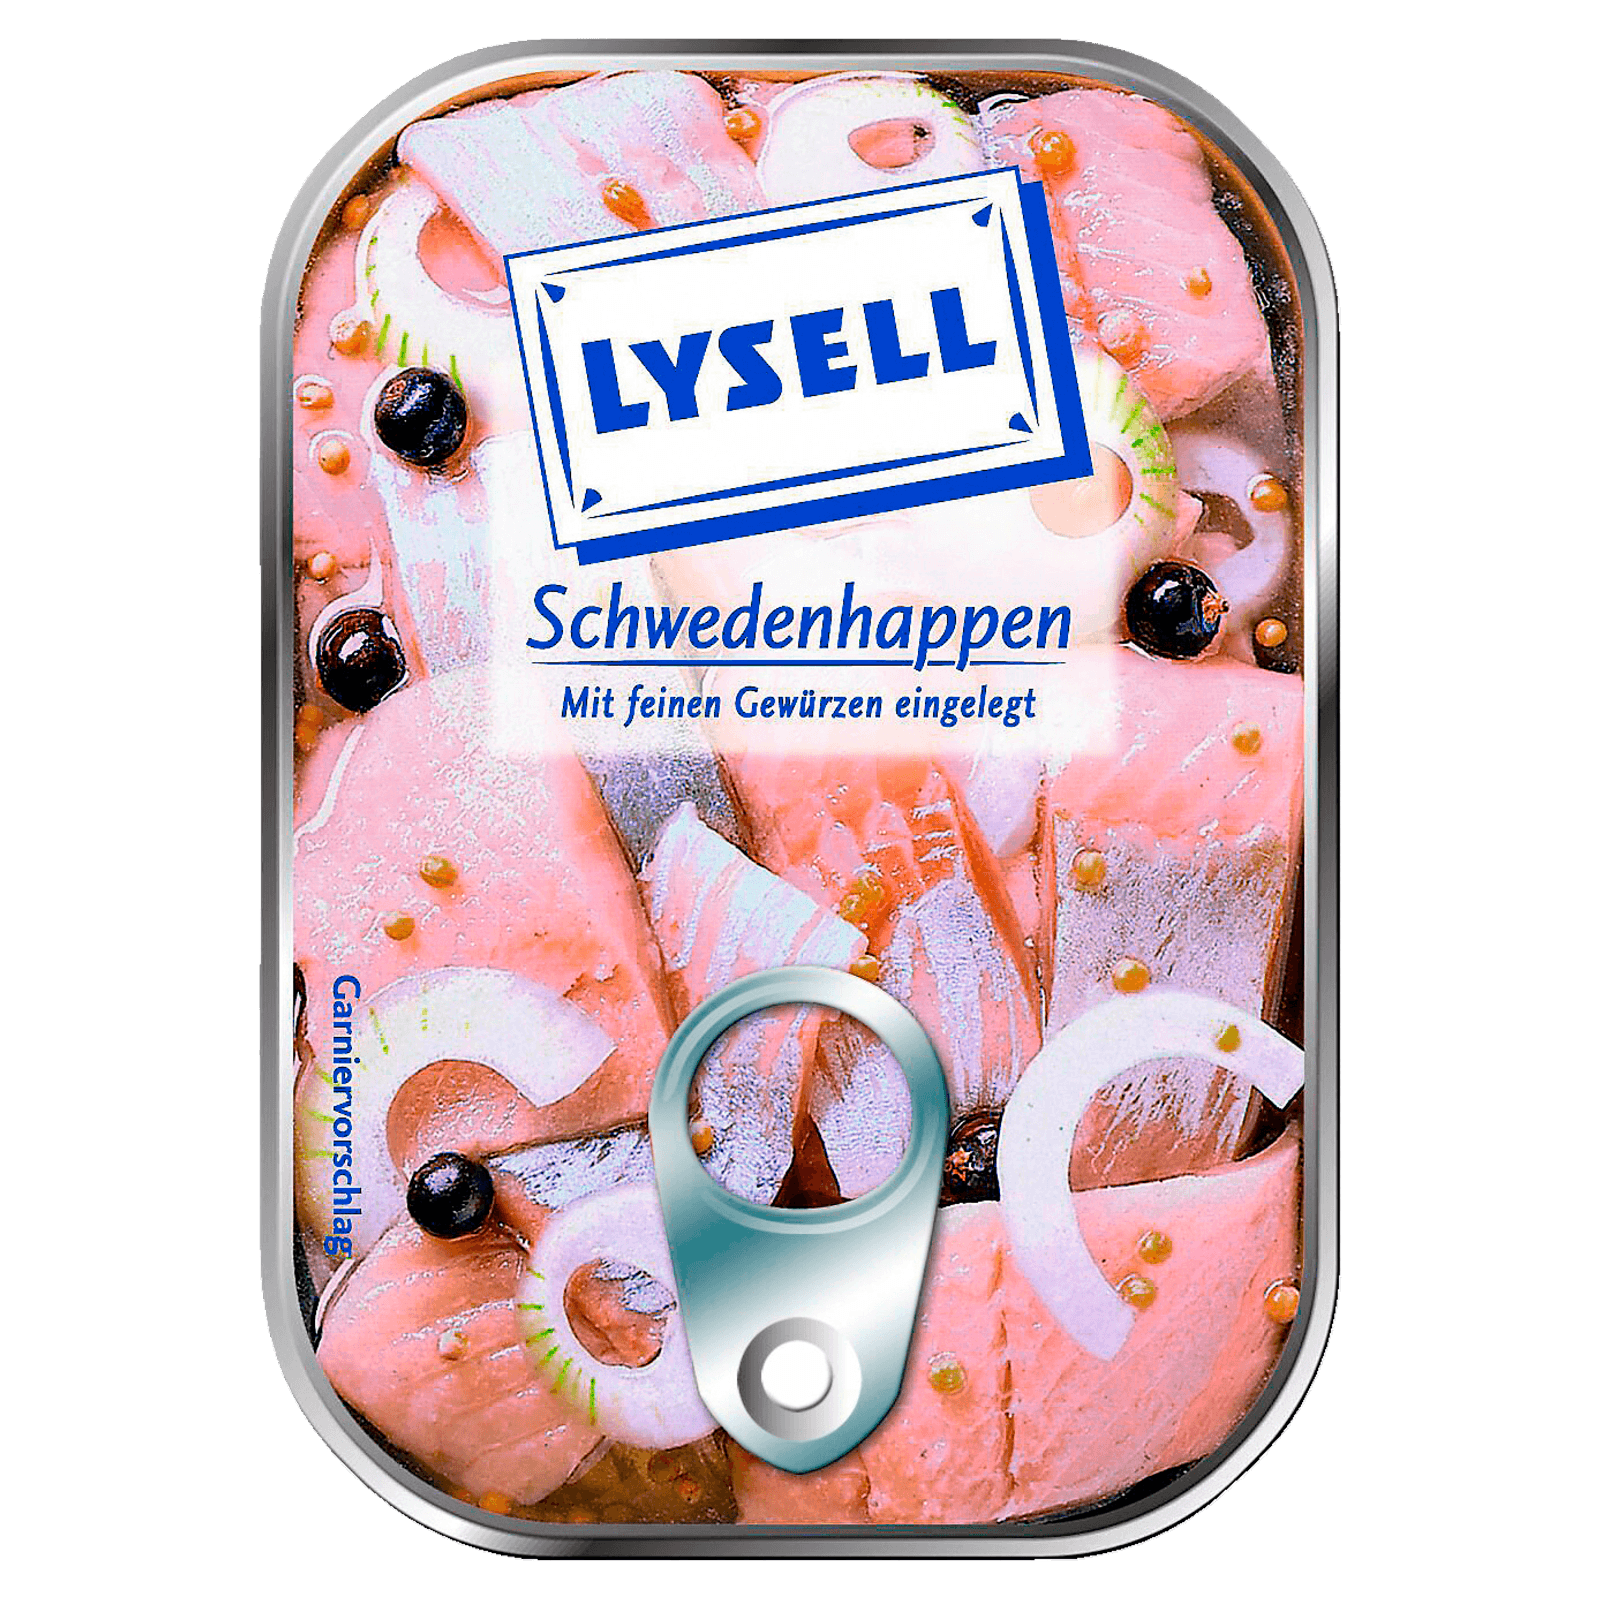 Lysell Schwedenhappen 125g  für 2.99 EUR